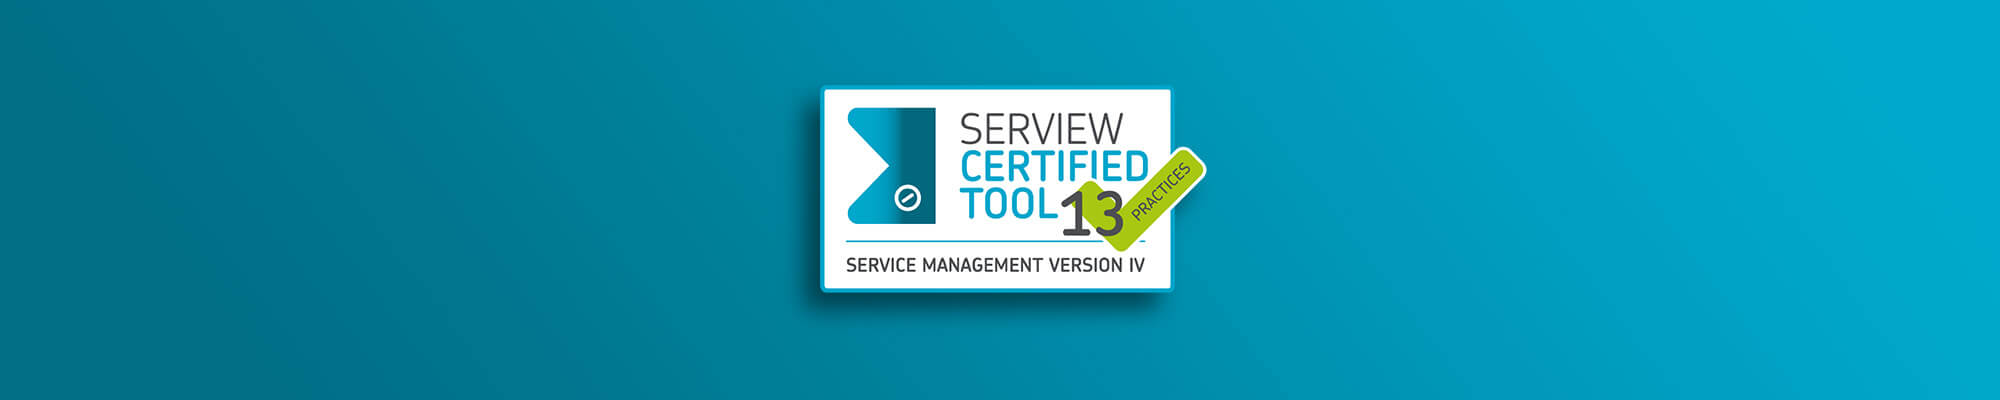 ITIL Zeritifizierung von SERVIEW | ServiceDesk Plus ManageEngine